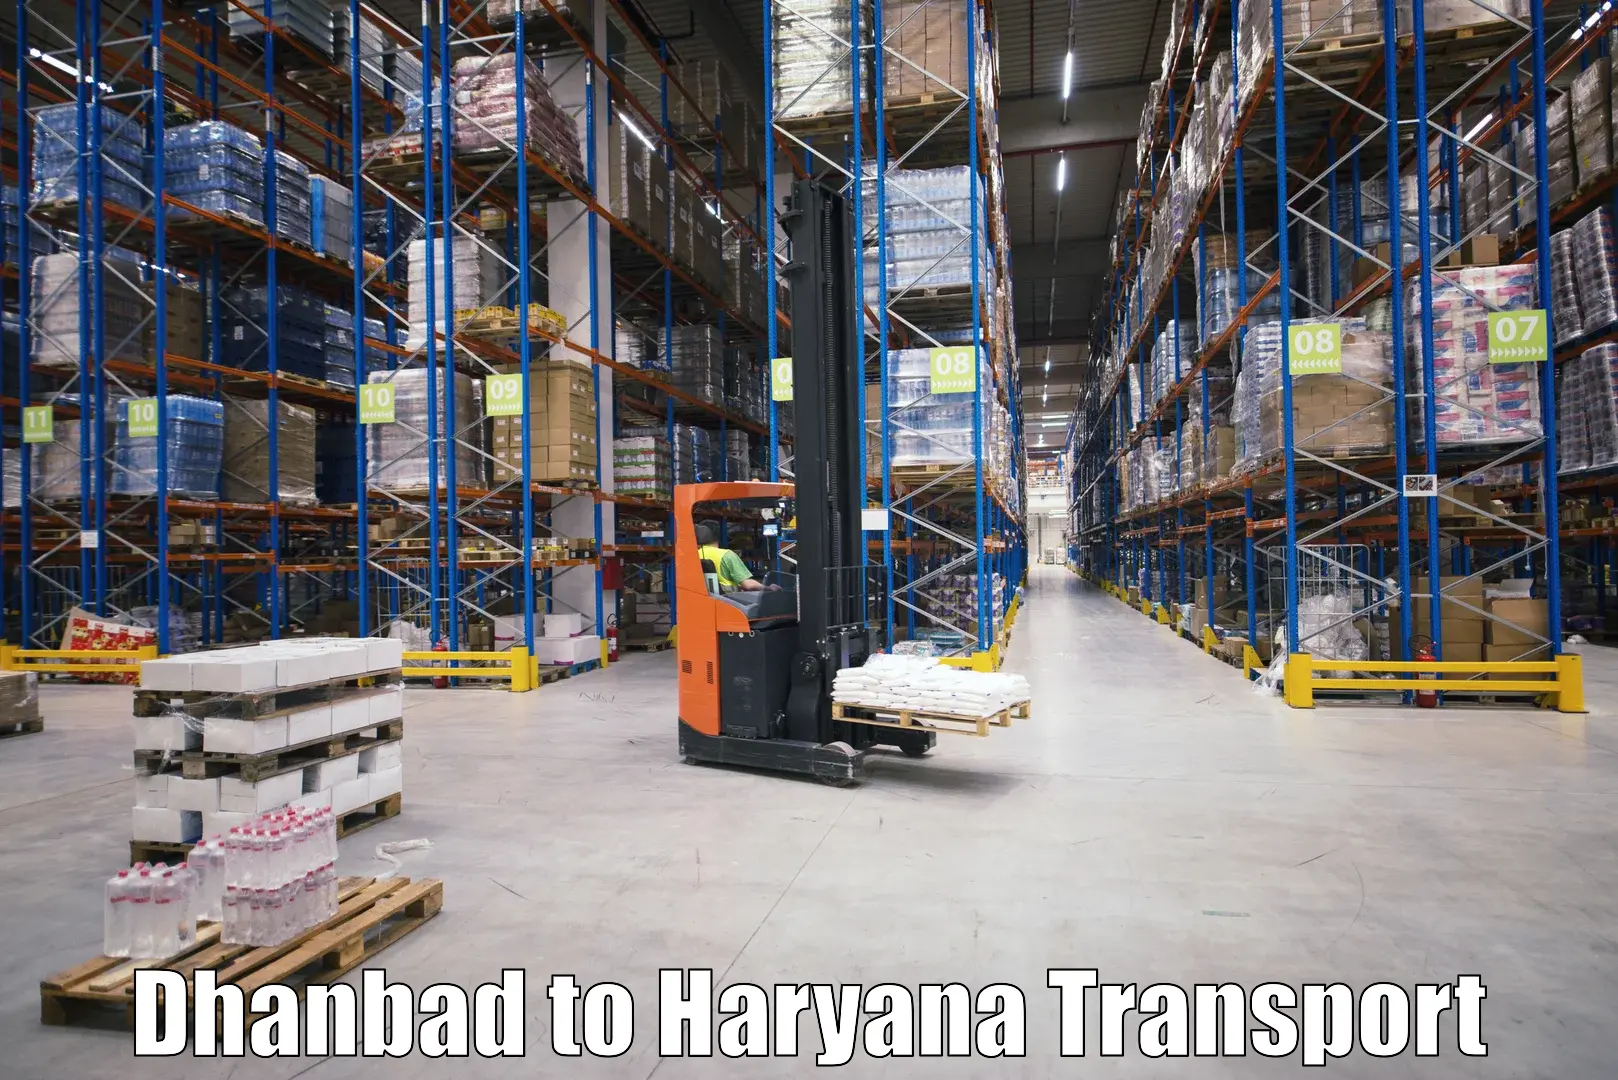 Online transport Dhanbad to Panipat